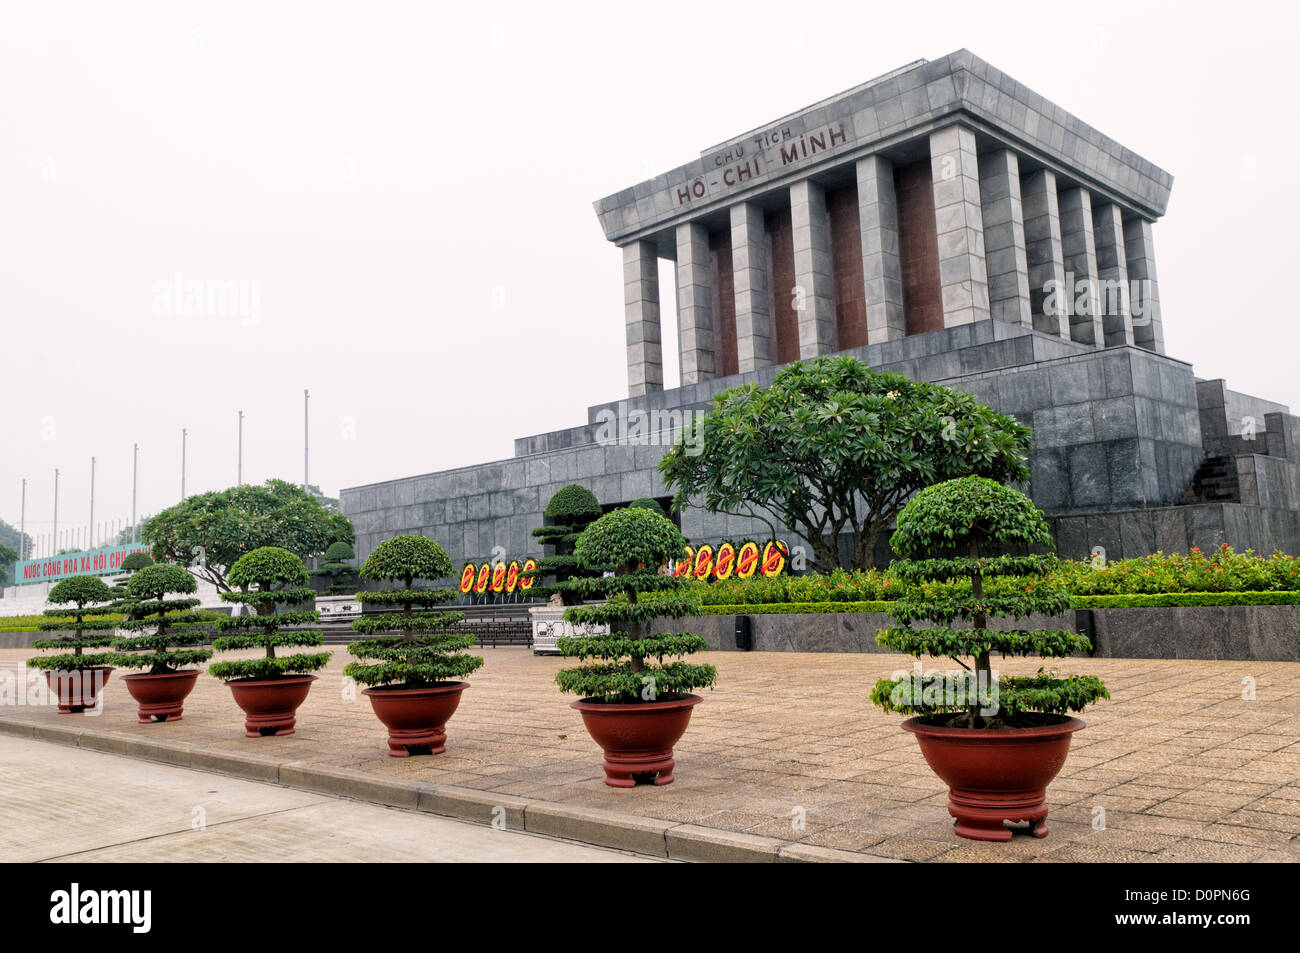 HANOI, Vietnam - Le mausolée de Ho Chi Minh à partir d'un angle de côté de 45 degrés. Un grand monument en centre-ville de Hanoi entouré par place Ba Dinh, le mausolée de Ho Chi Minh abrite le corps embaumé de l'ancien président fondateur et leader vietnamien Ho Chi Minh. Banque D'Images